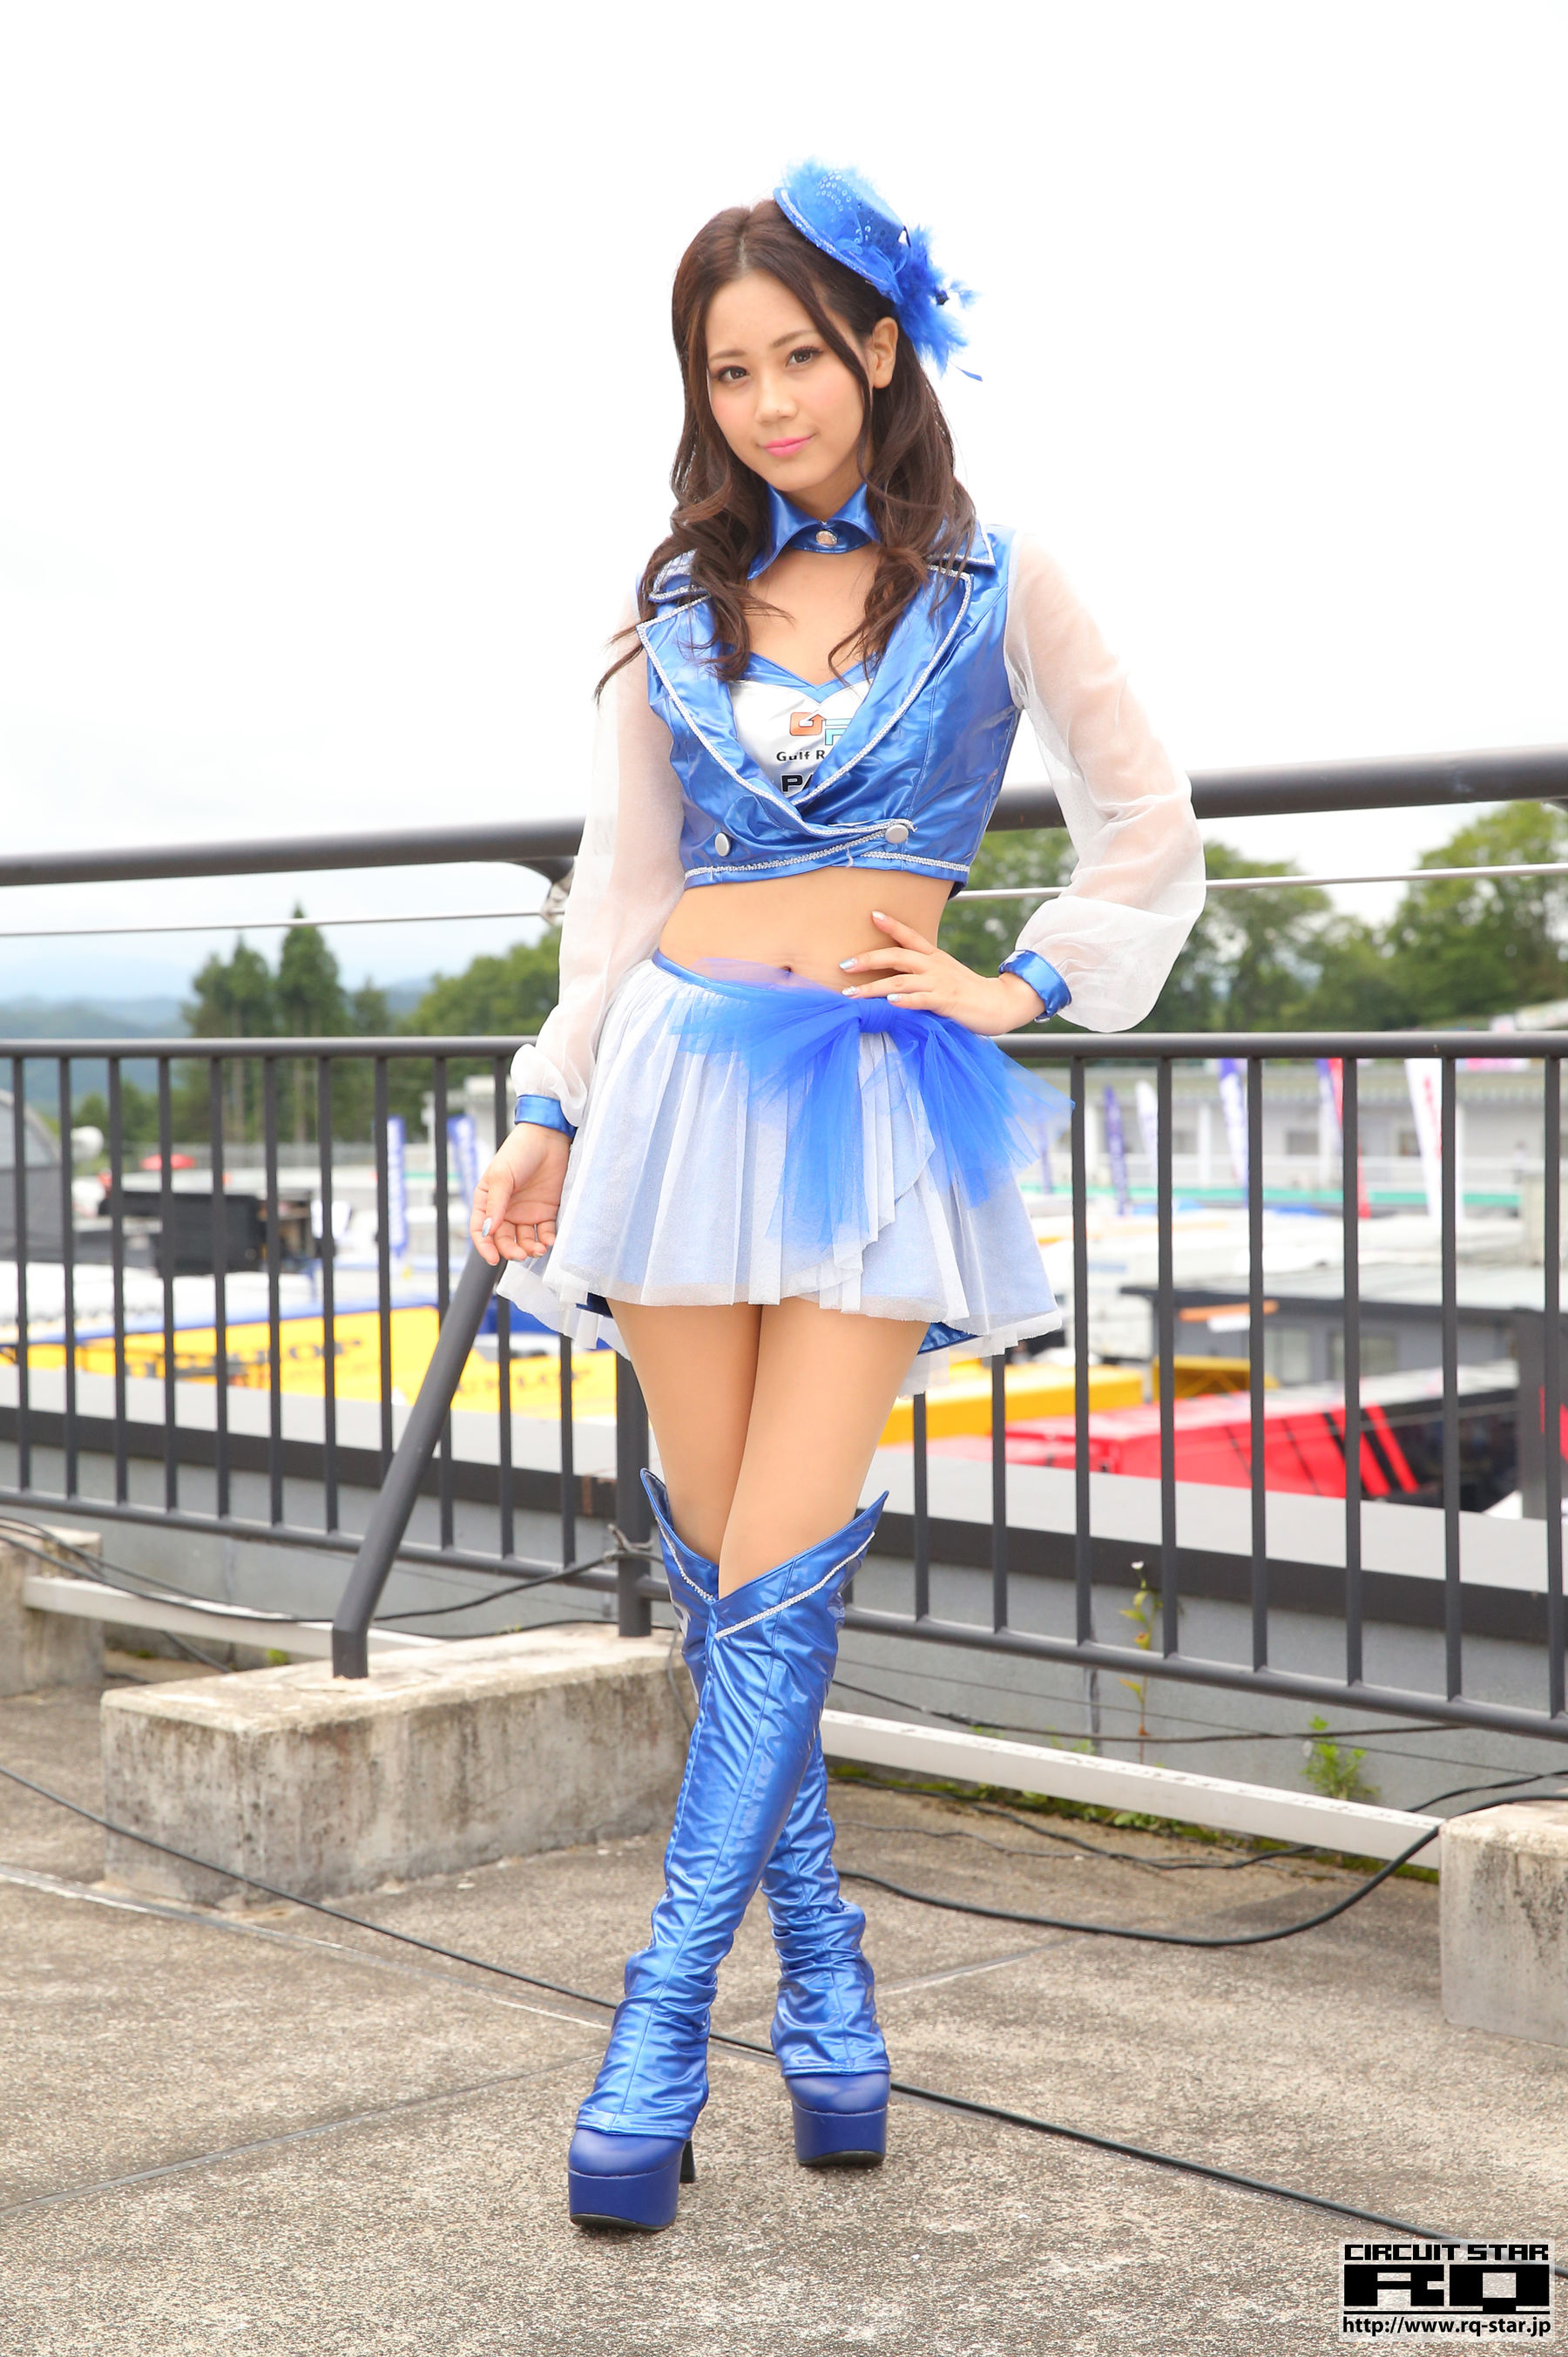 [RQ-STAR]赛车女郎:大島理沙高品质写真作品个人分享(25P)